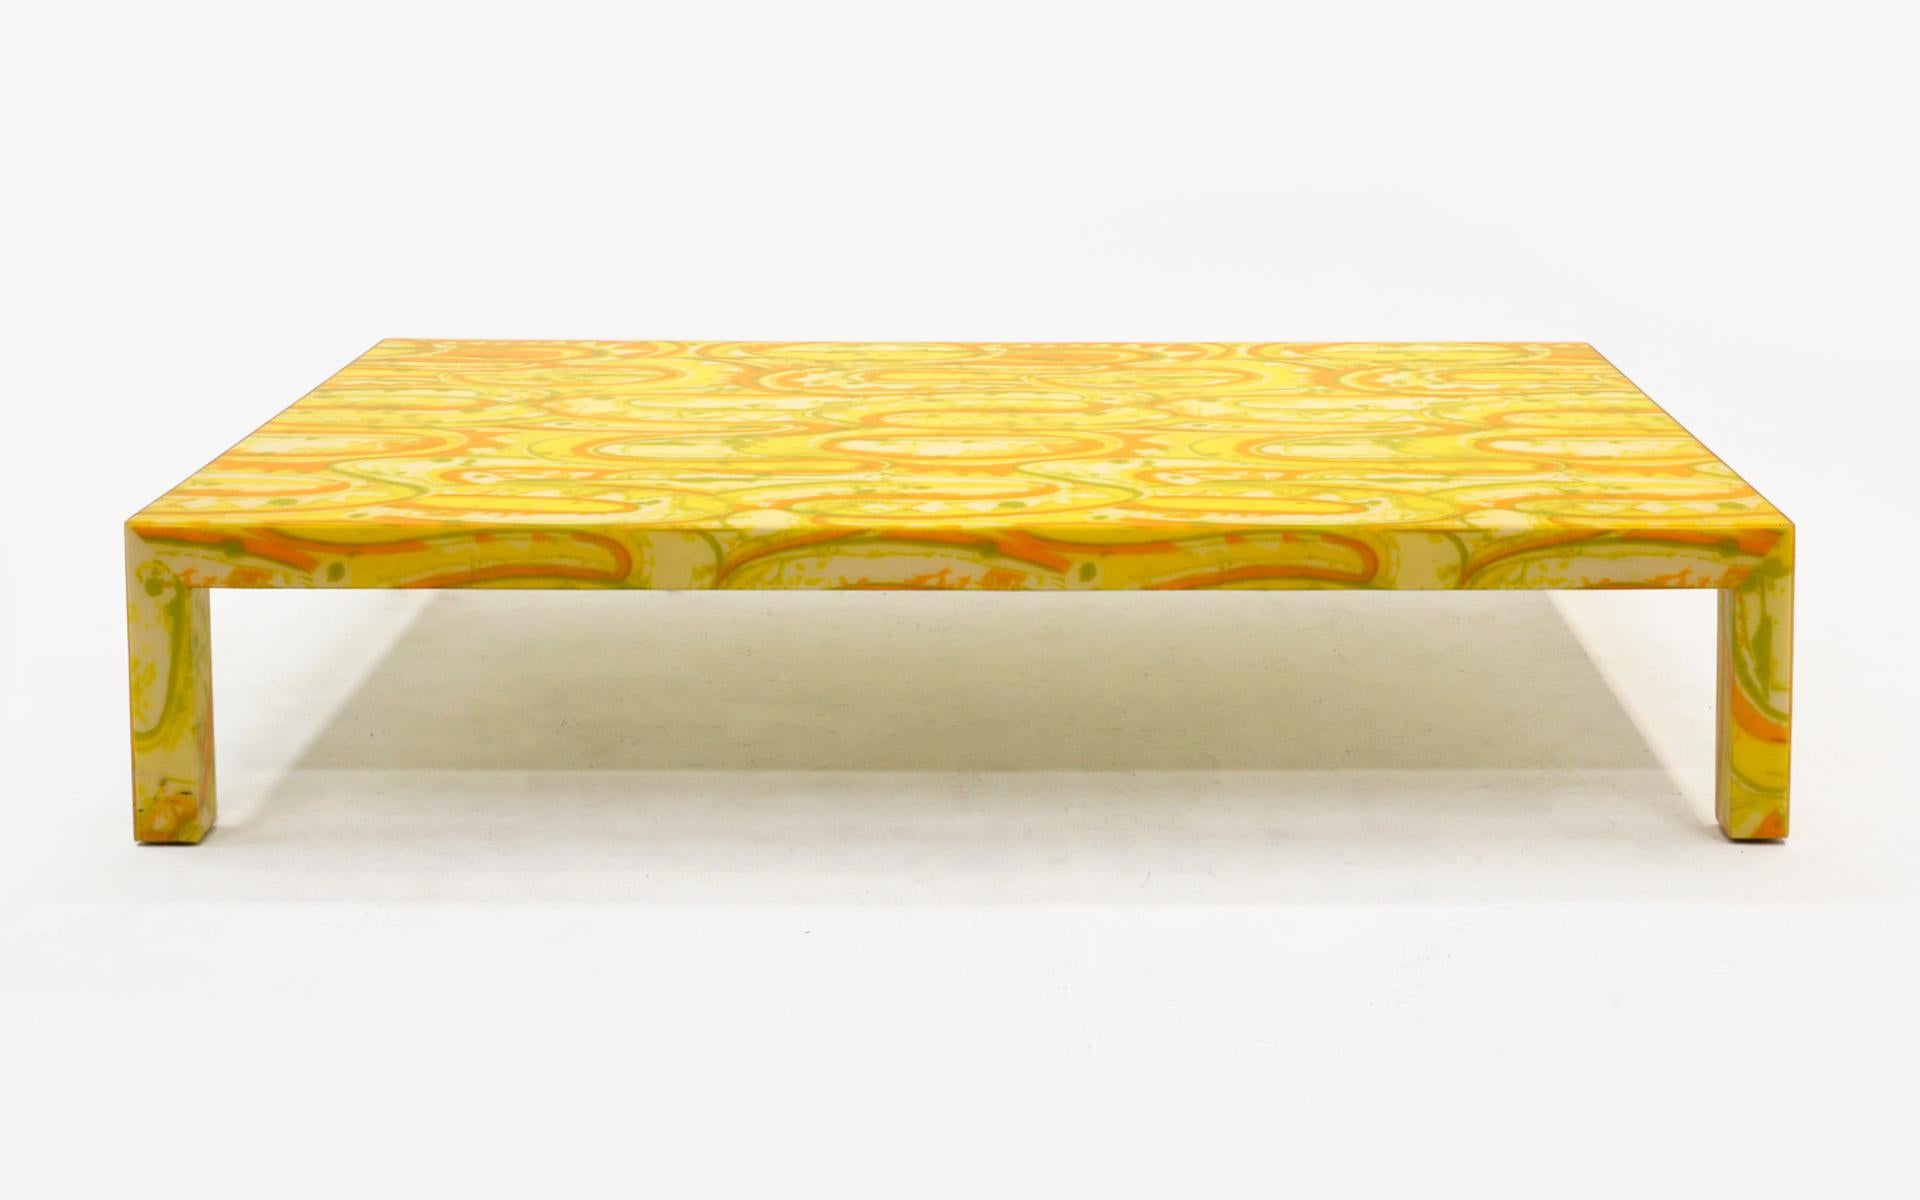 FABULOUS (wir benutzen dieses Wort nie), ein einzigartiger, sehr großer Couchtisch in Gelb, Orange und Grün, entworfen vom kalifornischen Designer Arthur Elrod für die Bolero Residenz, 1966. Diese 6,5 Fuß mal 4 Fuß ist schwer und extrem gut gemacht.